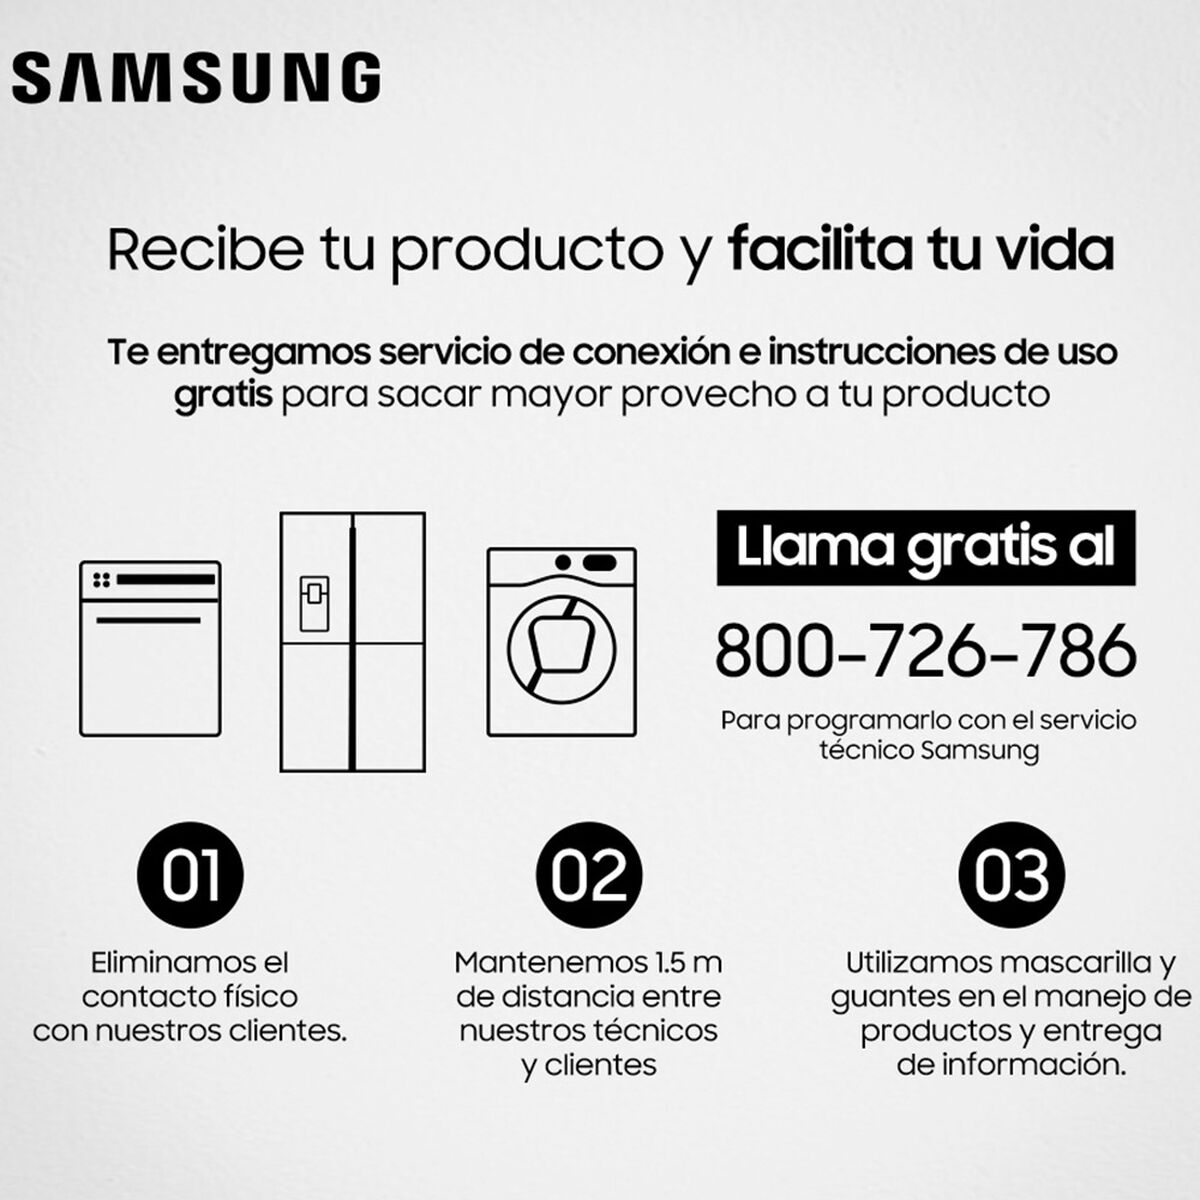 Lavadora Secadora Samsung WD95T4046CE/ZS 9,5/6 kg.